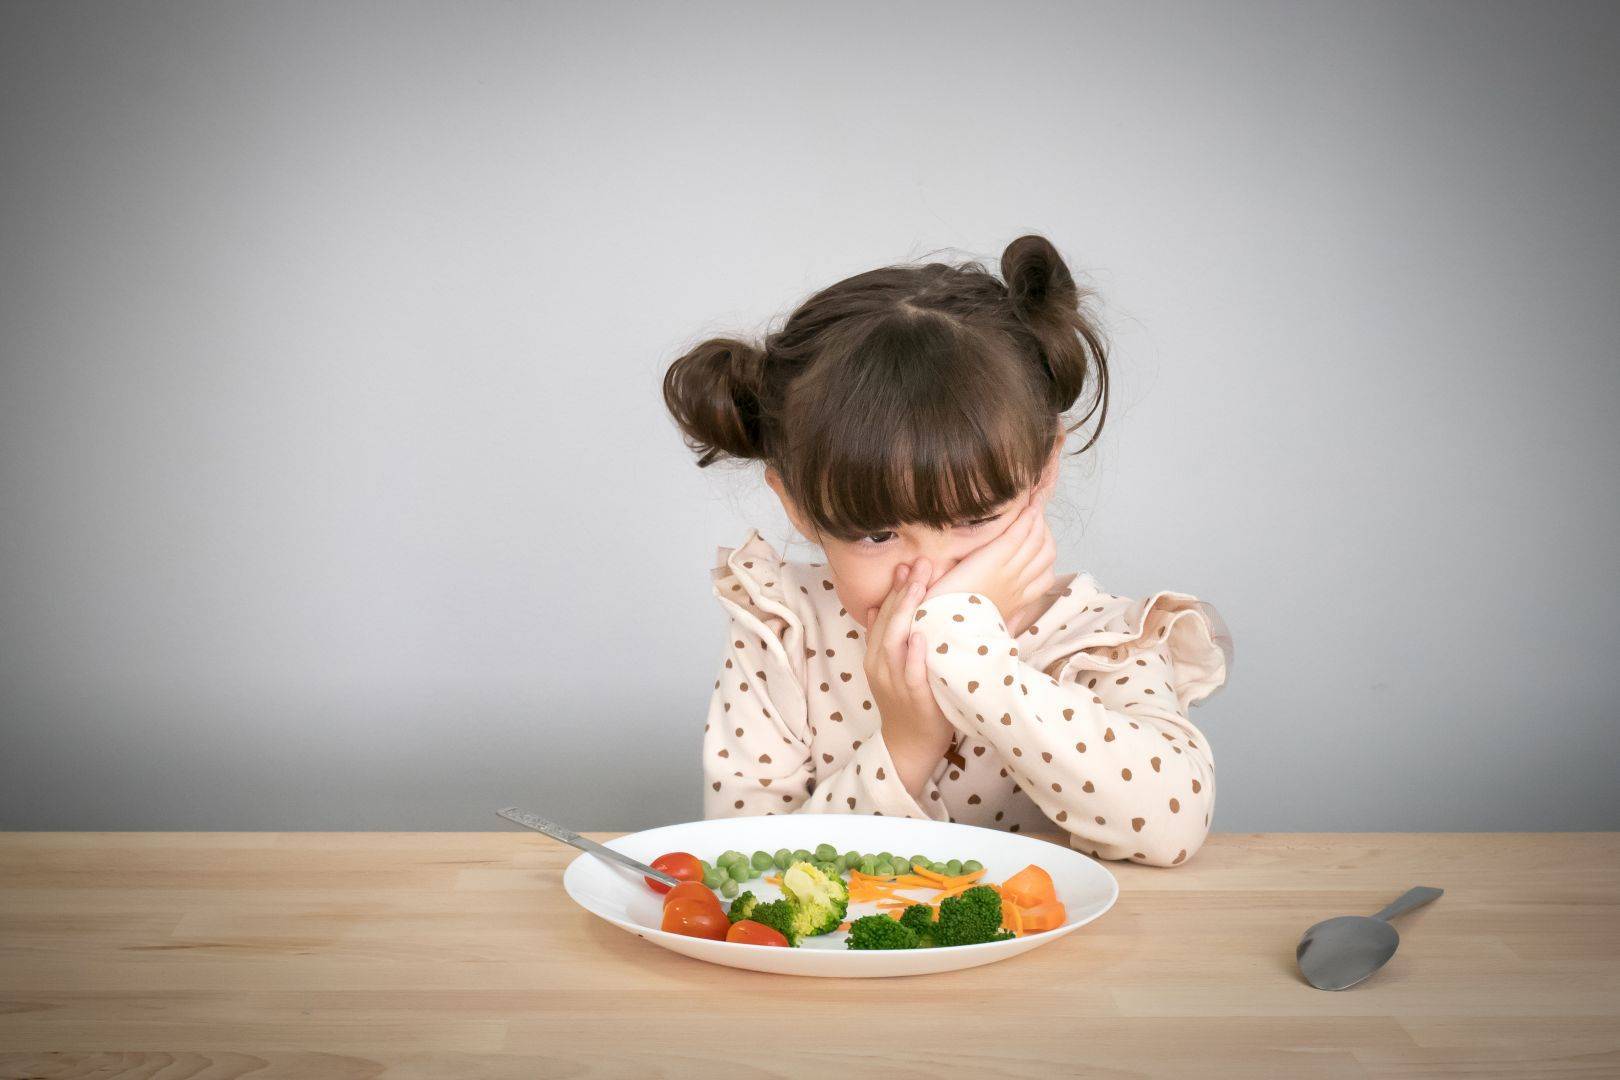 Ребенок имеет право не есть. но вы решаете, что поставить на стол